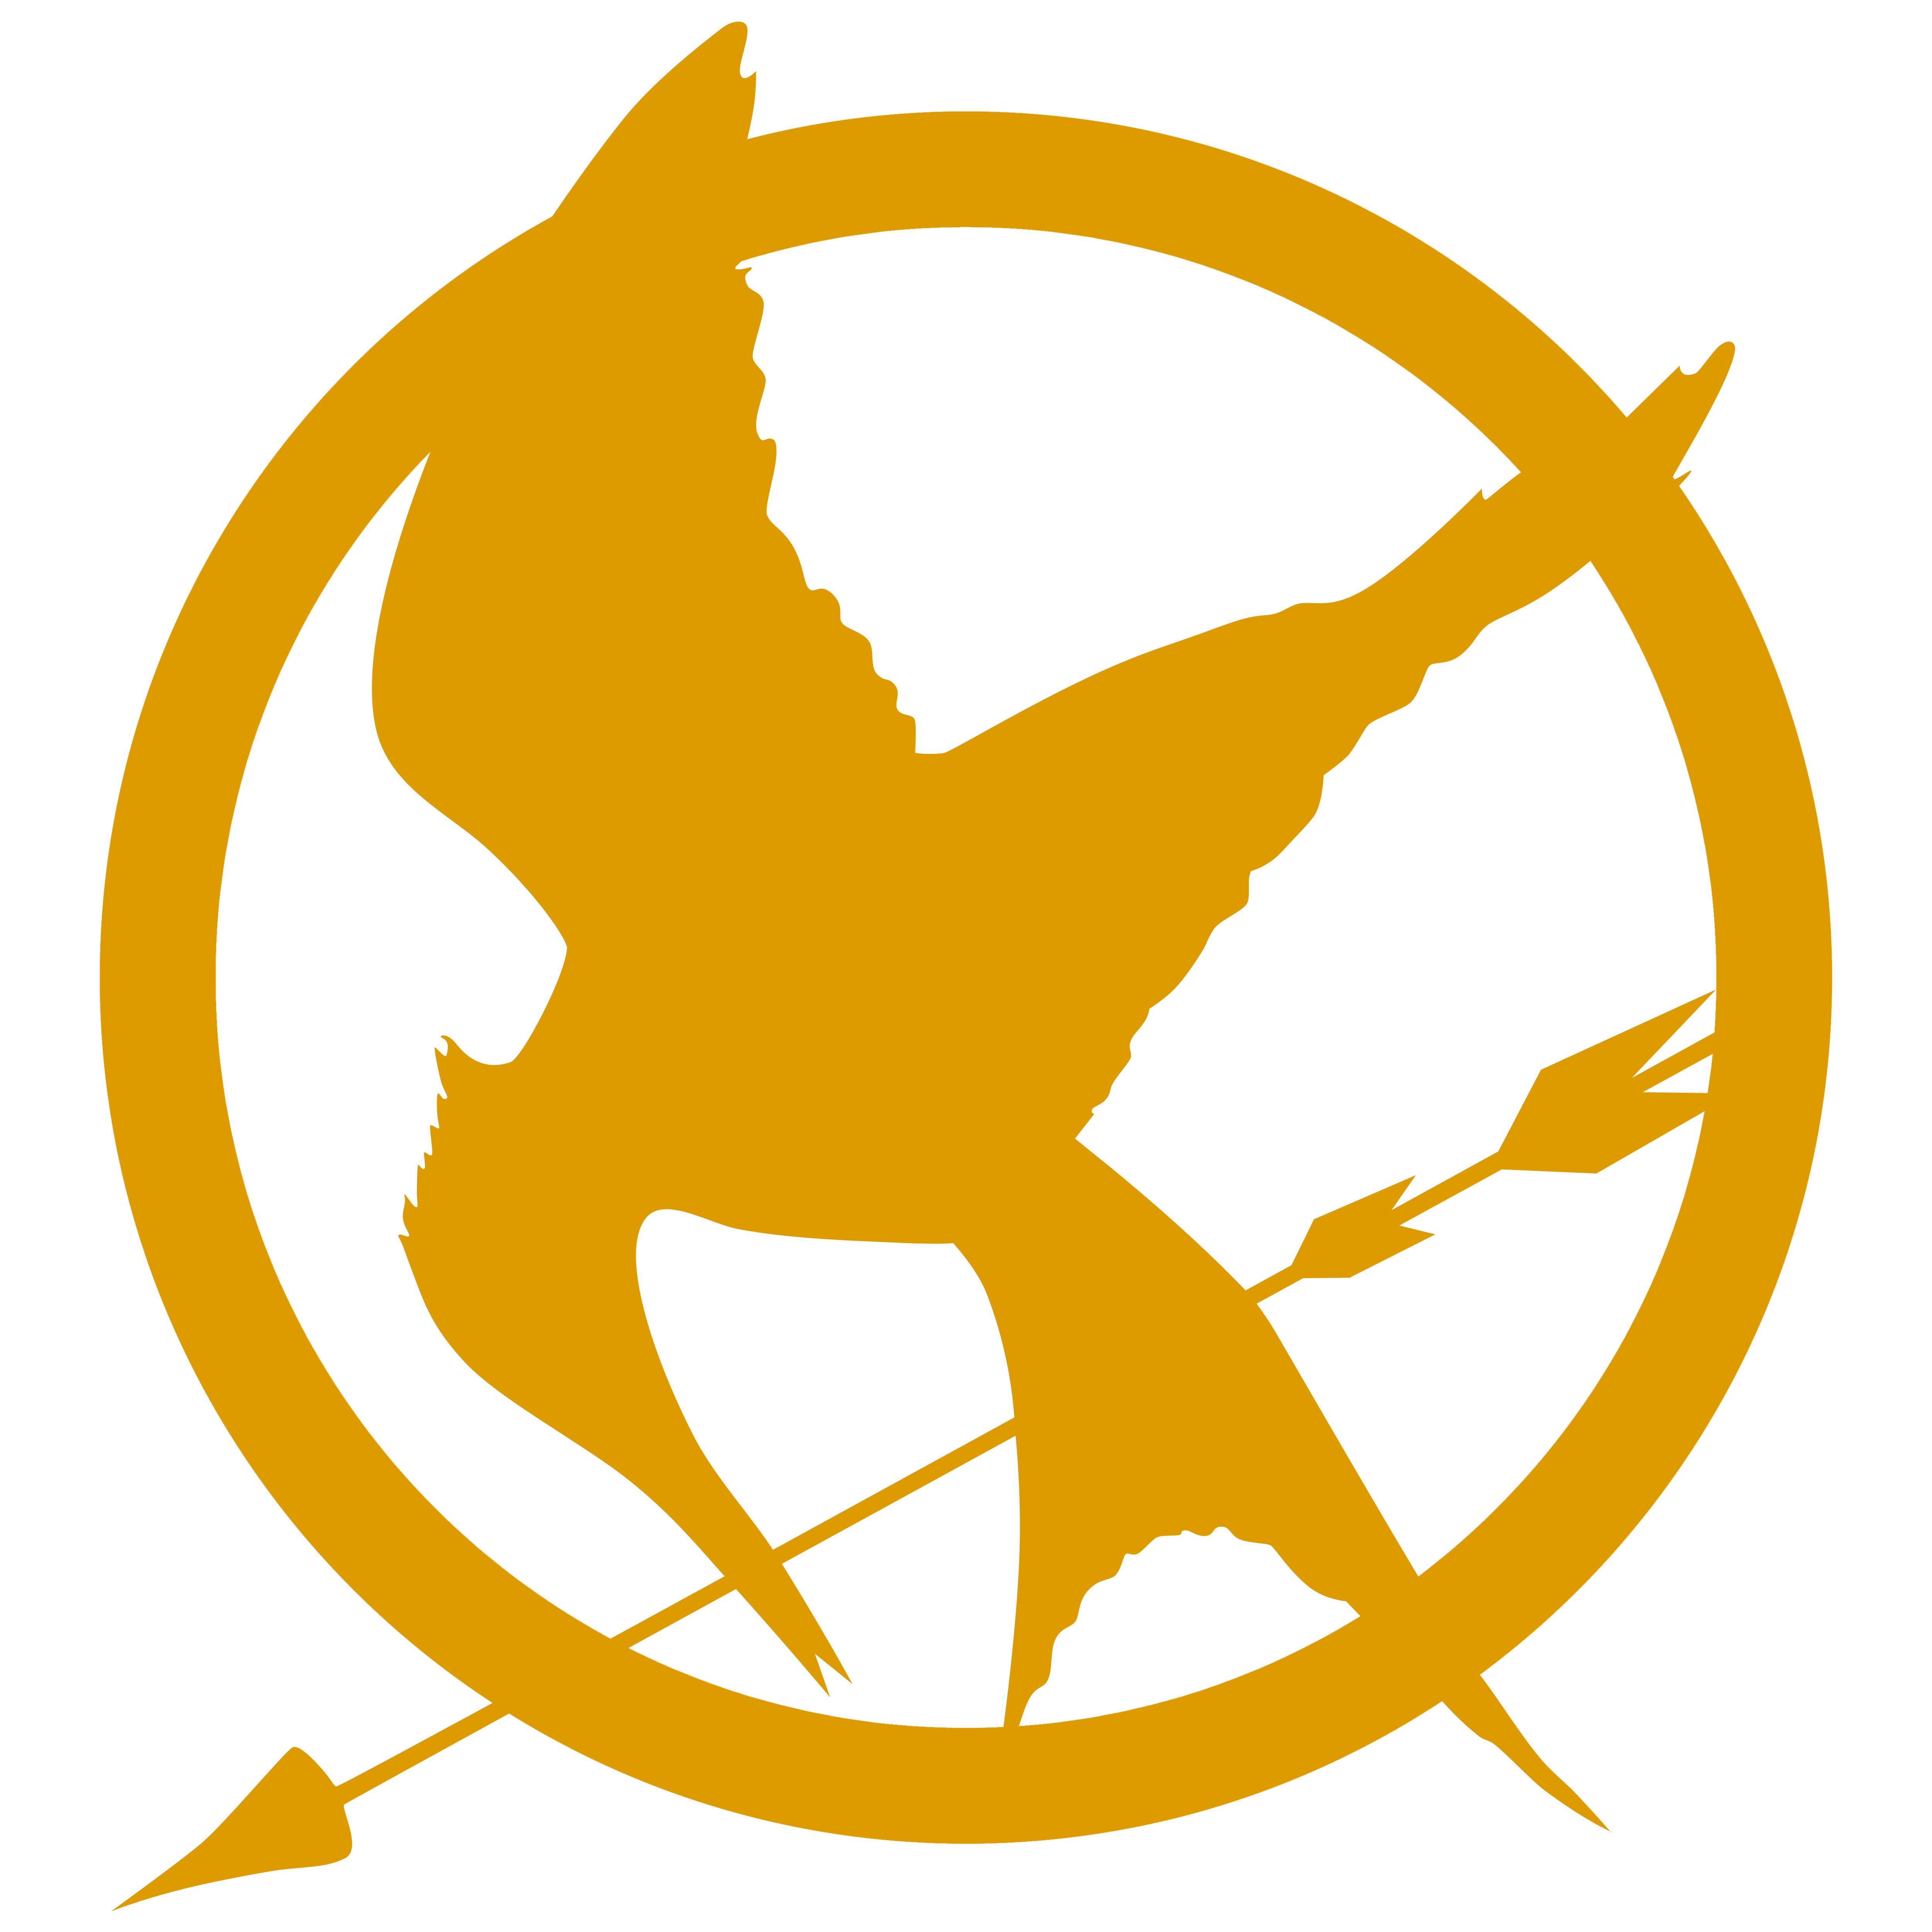 Hunger Games Design by StefanThePribic on DeviantArt